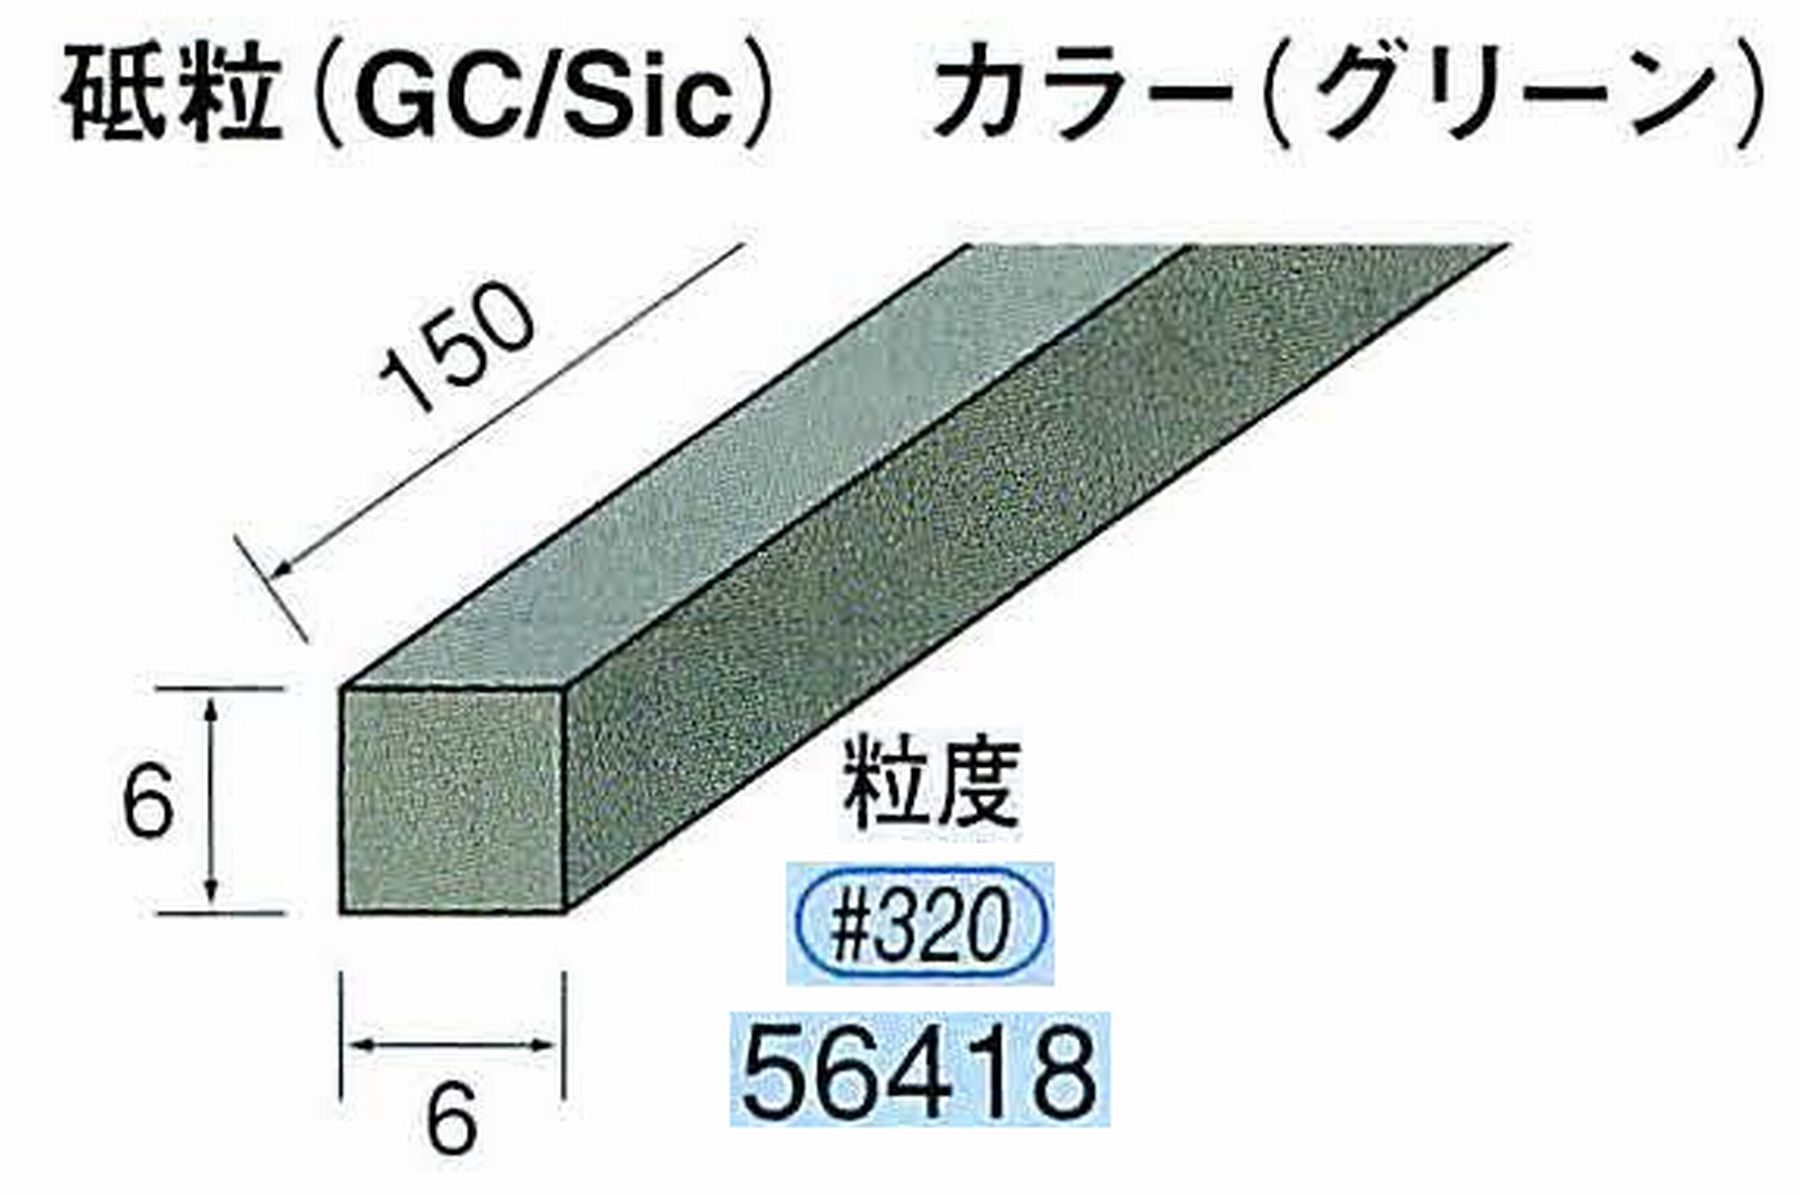 ナカニシ/NAKANISHI スティック砥石 グリーン・フィニッシュシリーズ 砥粒(GC/Sic) 56418